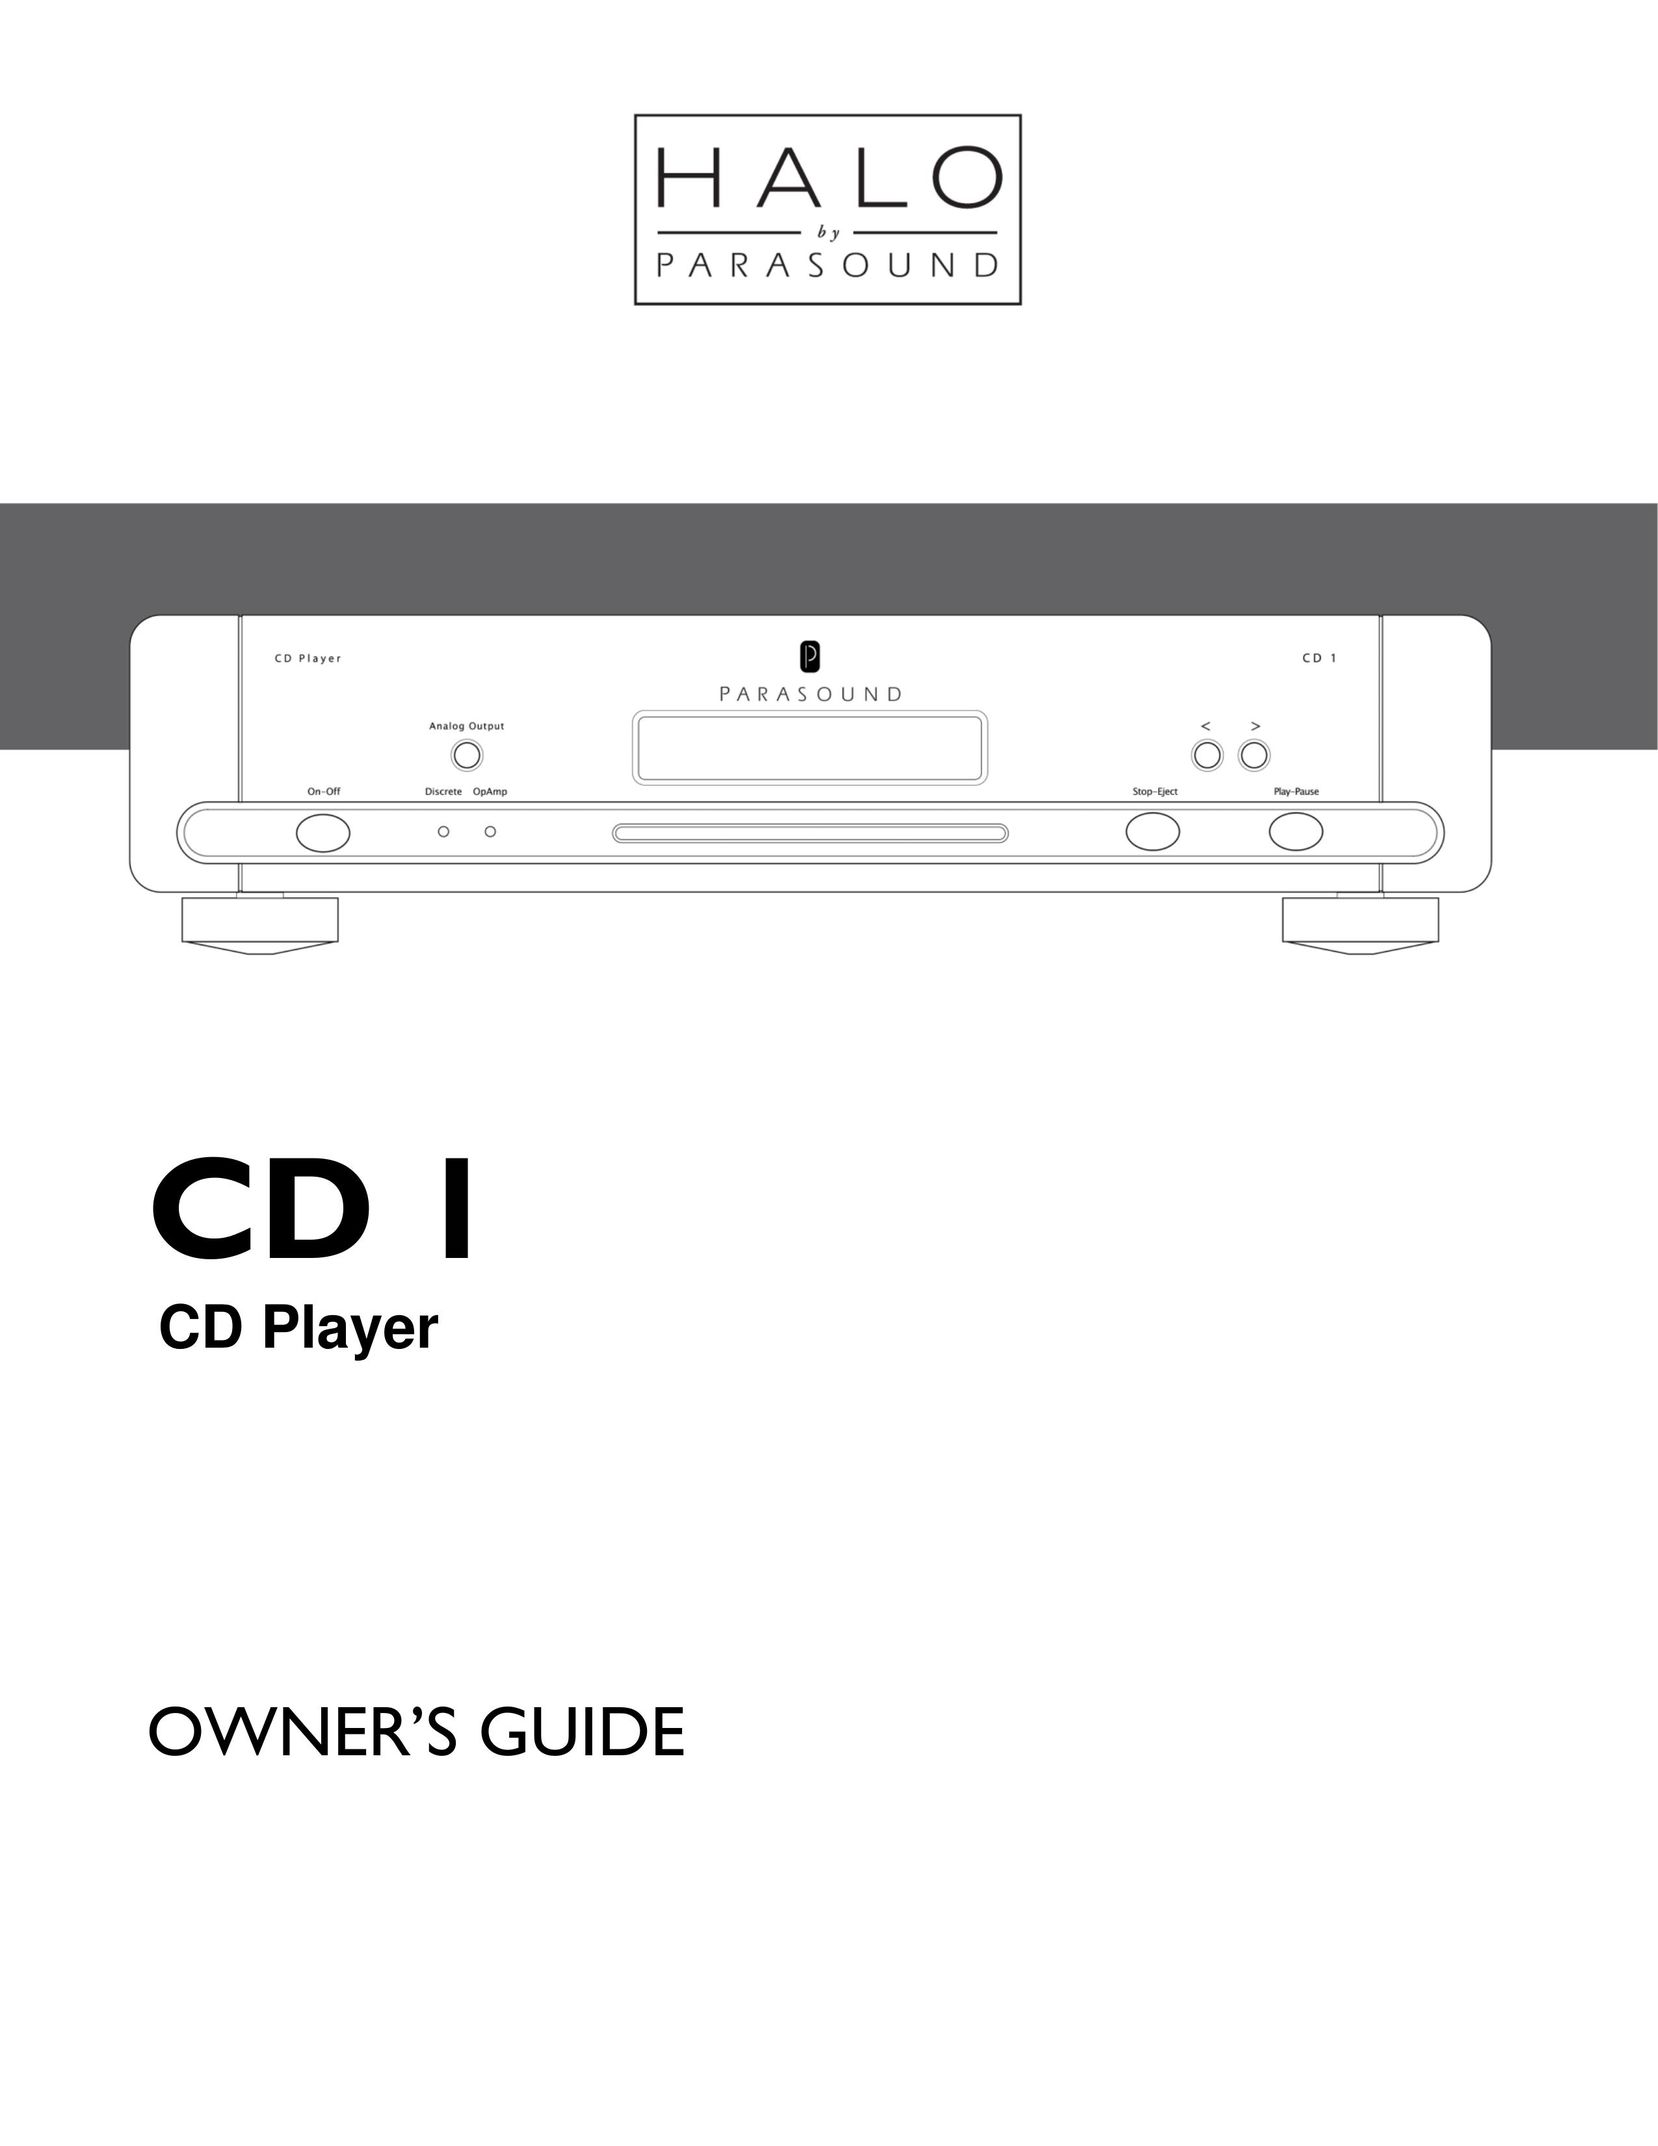 Parasound CD 1 CD Player User Manual